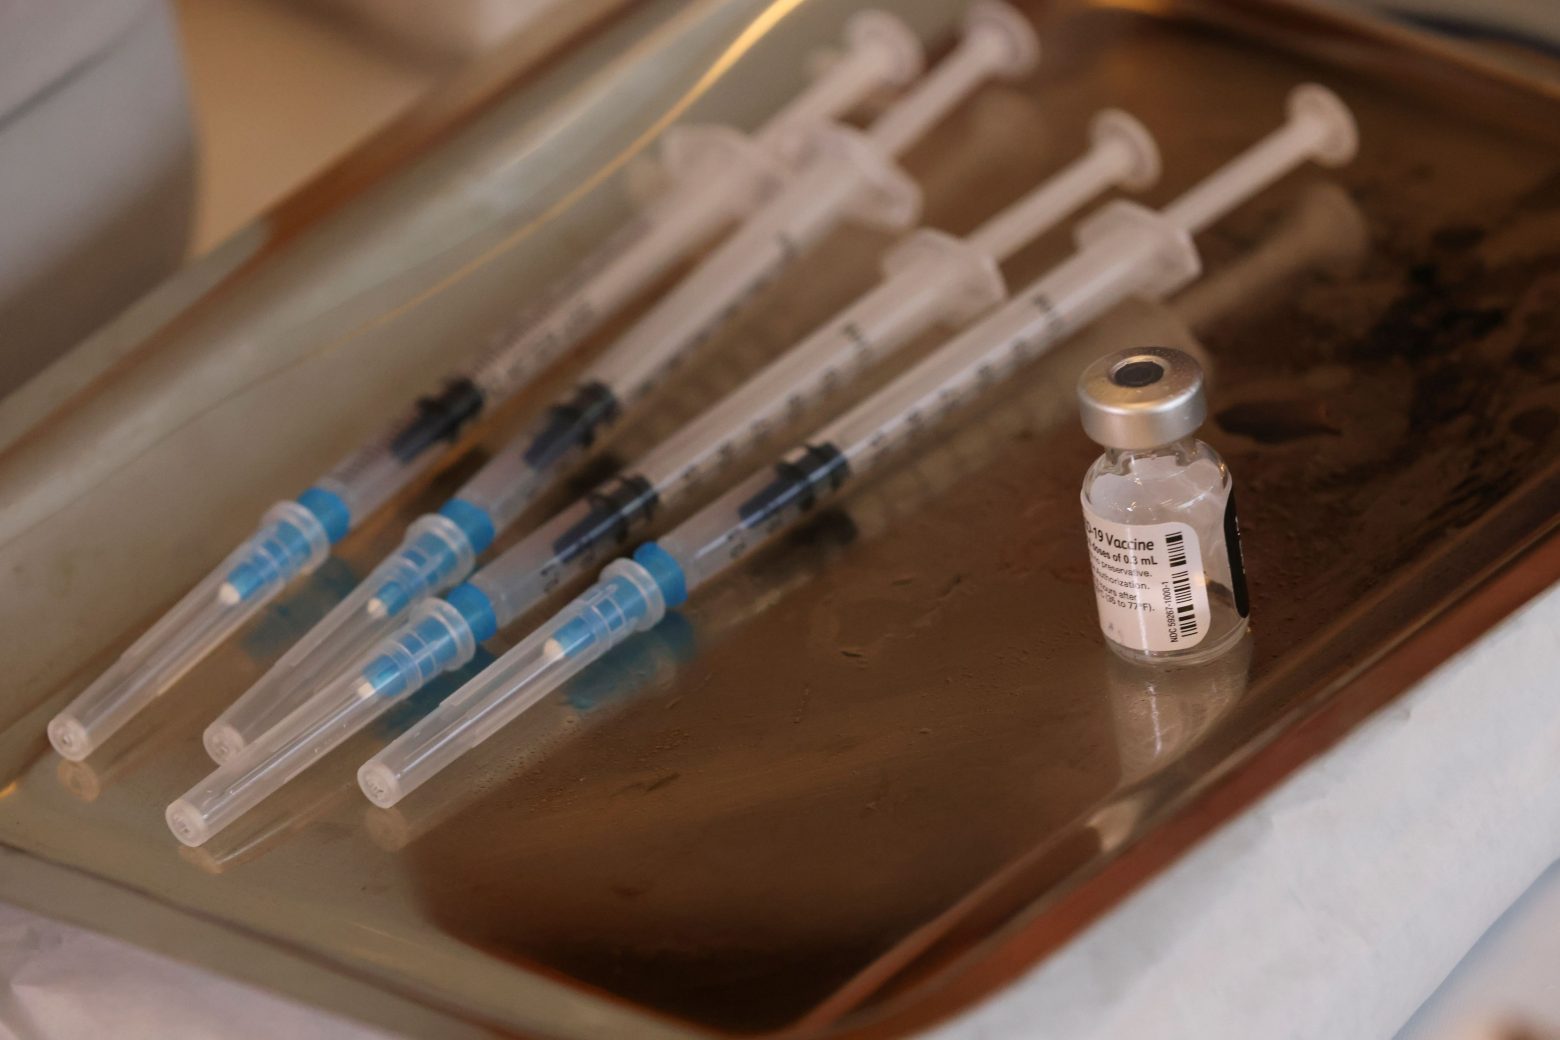 Κοροναϊός - Επιτροπή: Σύσταση για εμβολιασμό εφήβων 15-17 ετών και παιδιών άνω των 12 ετών με υποκείμενα νοσήματα